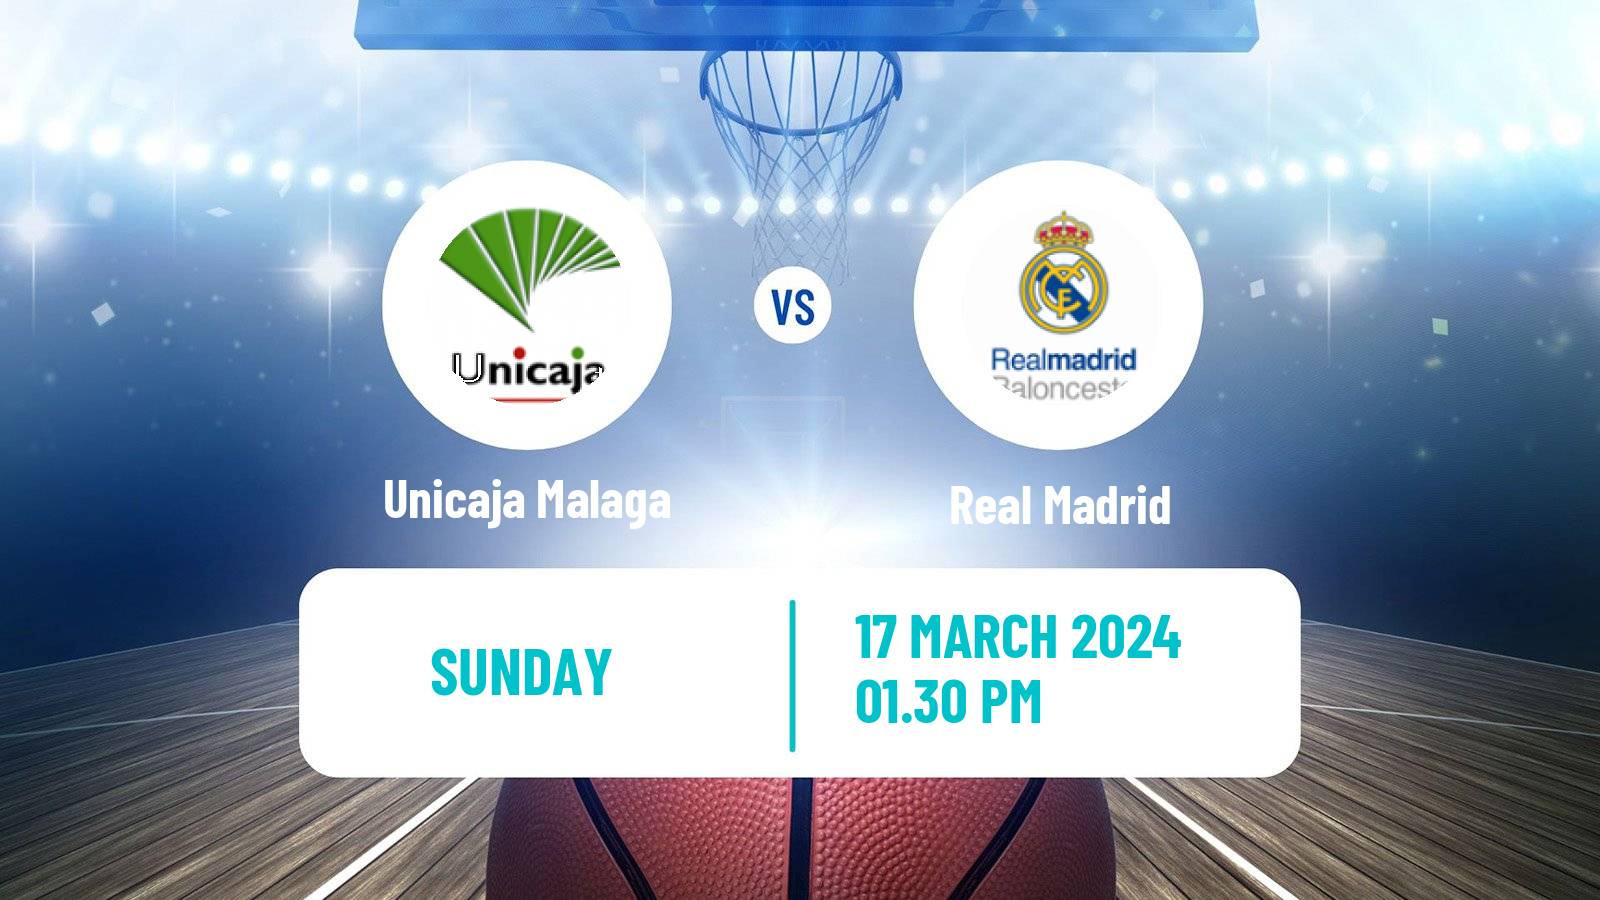 Basketball Spanish ACB League Unicaja Malaga - Real Madrid